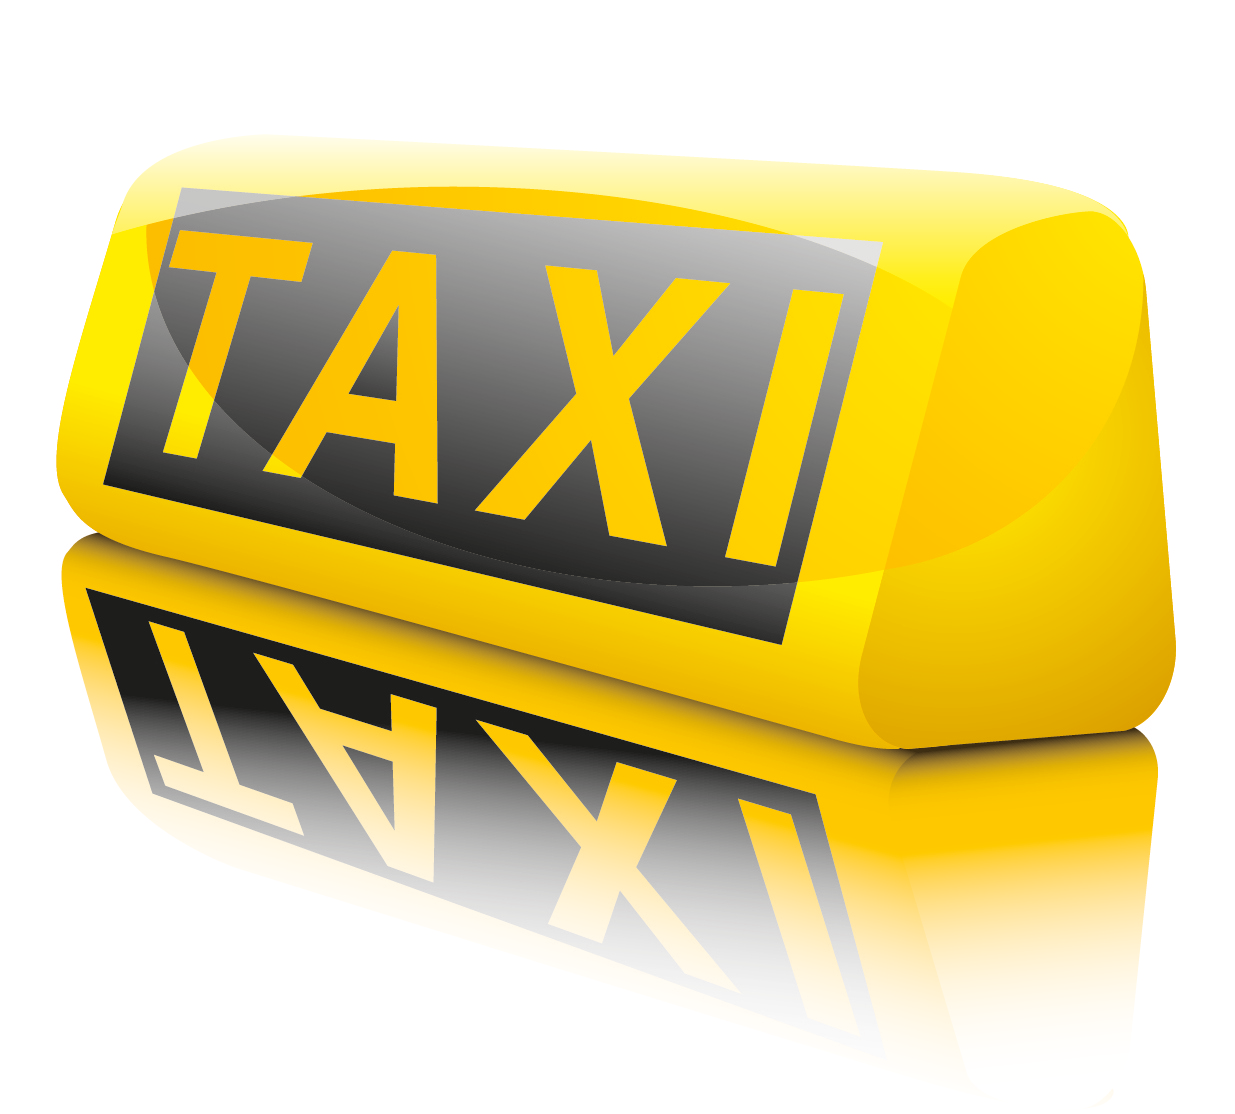 заказать Яндекс такси эконом класса в Москве